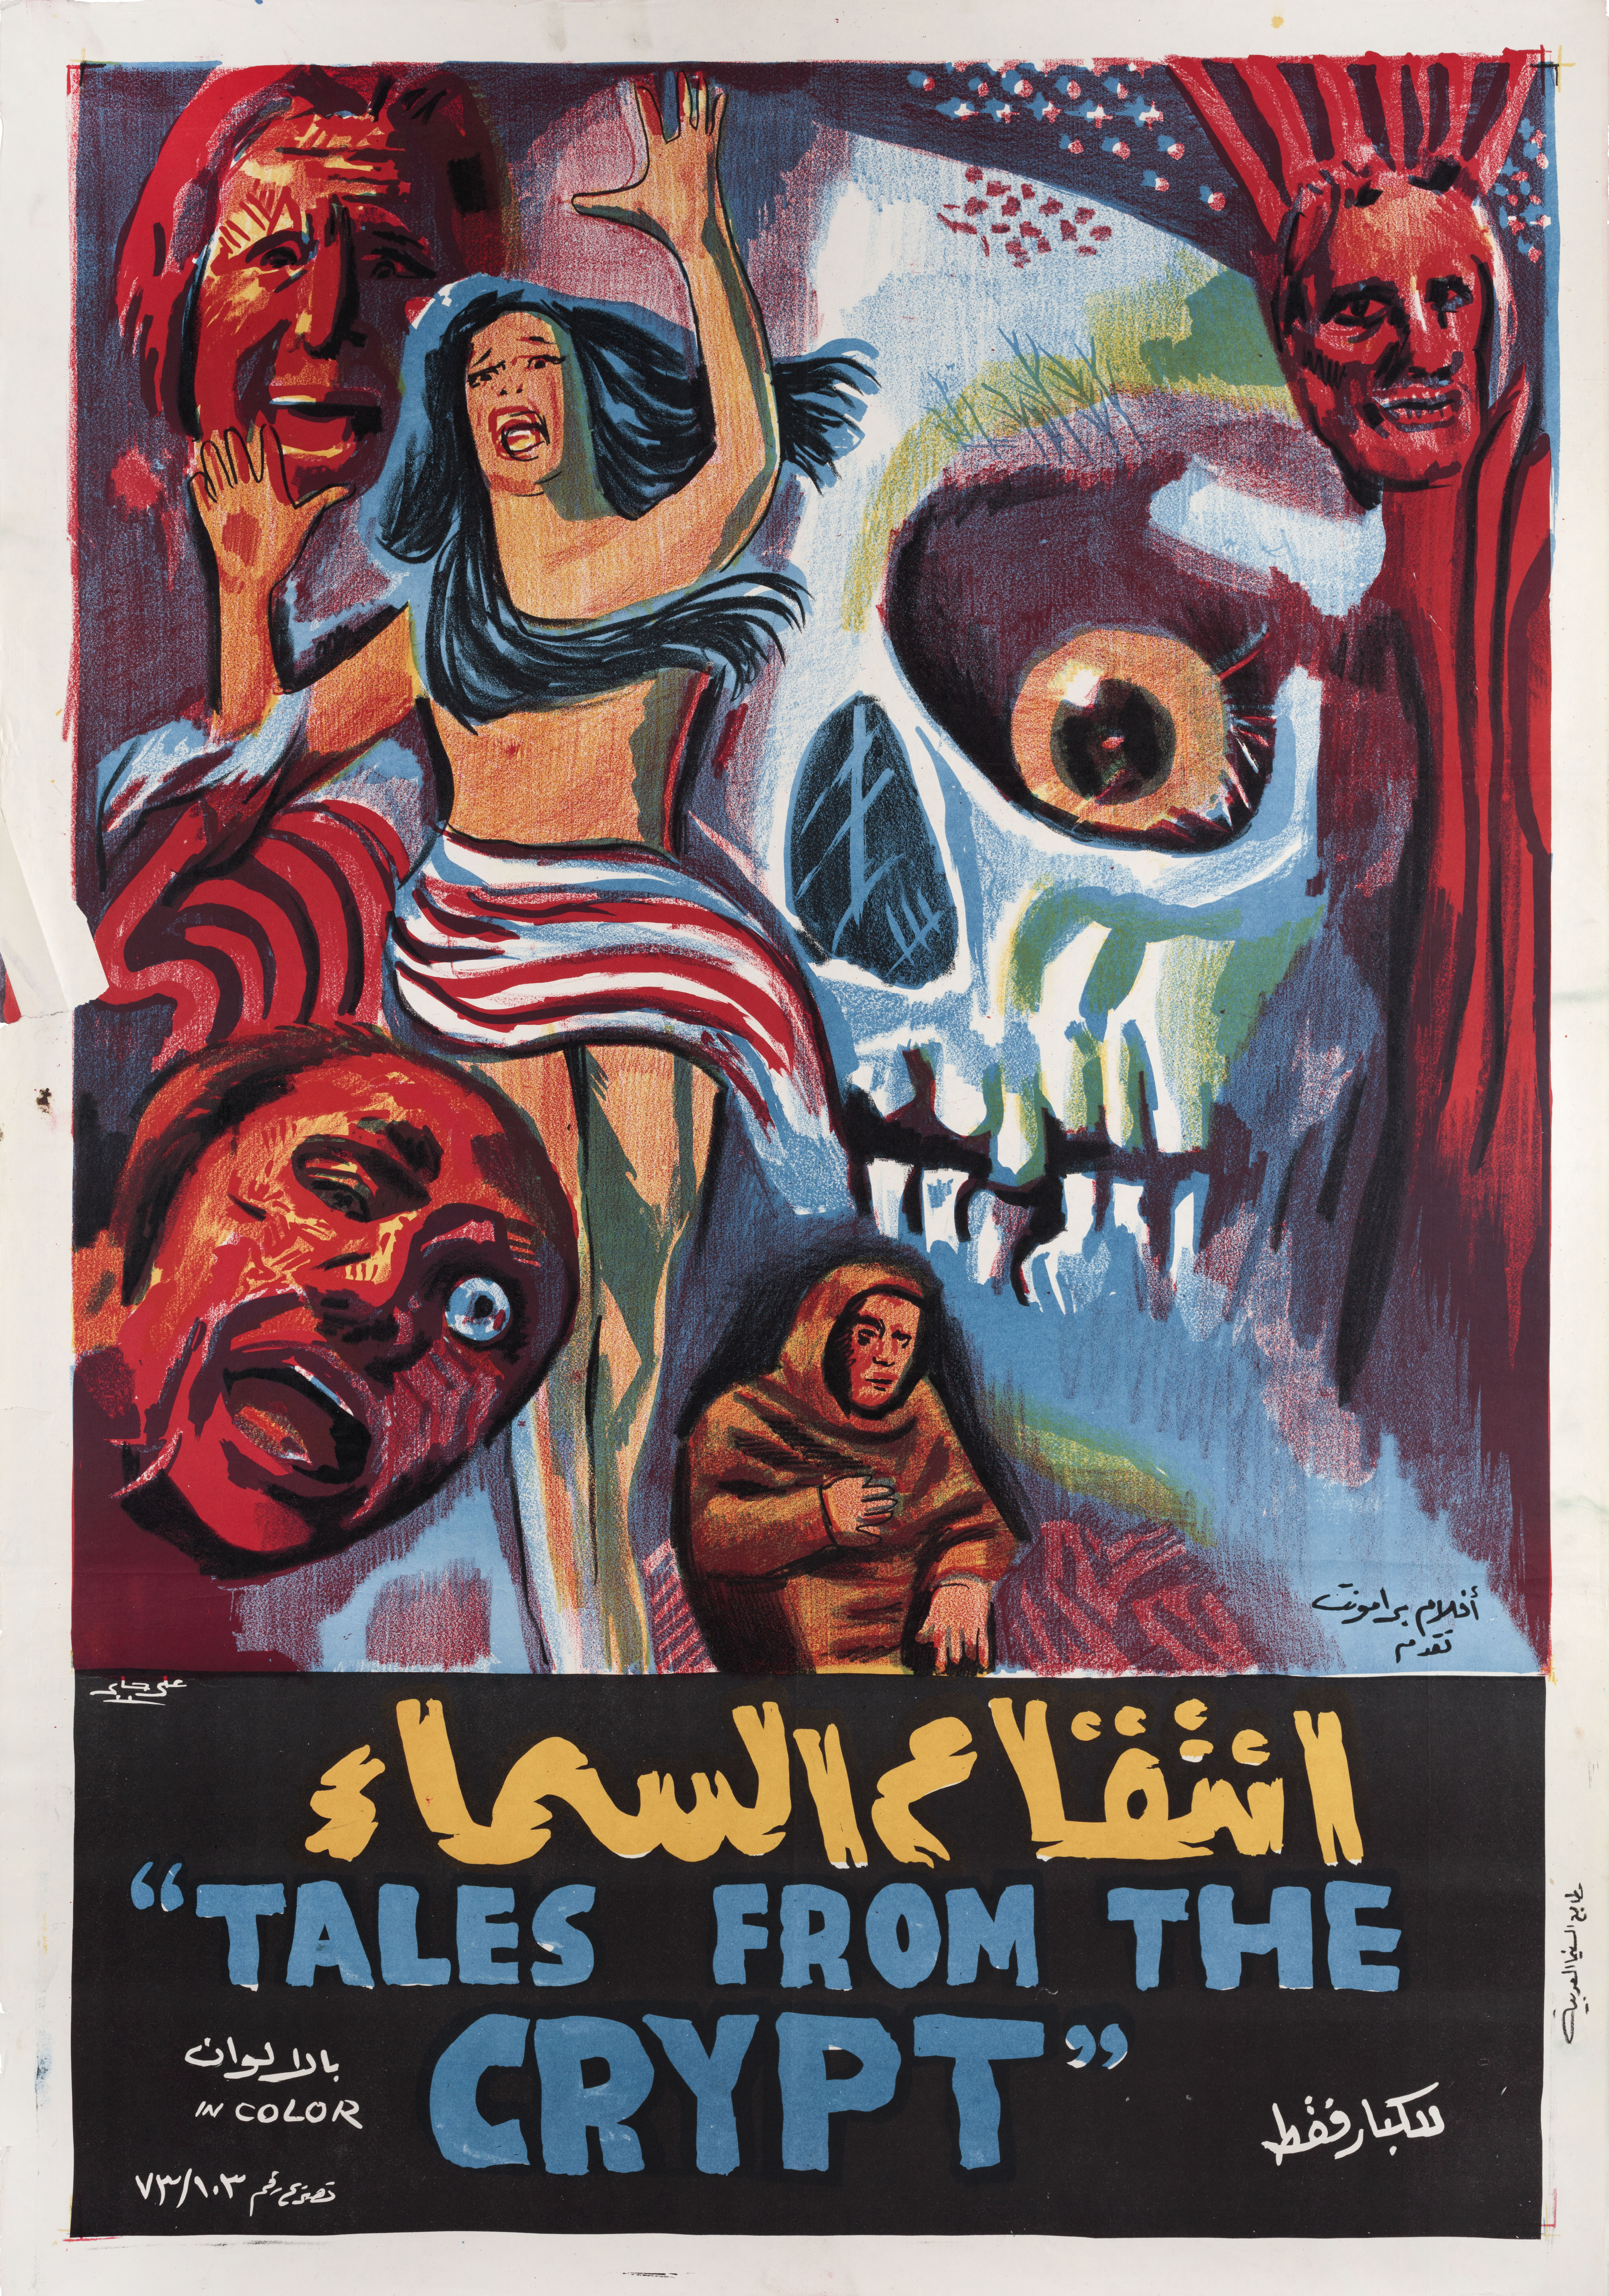 Байки из склепа (Tales from the Crypt, 1972), режиссёр Фредди Фрэнсис, египетский постер к фильму (ужасы, 1972 год)